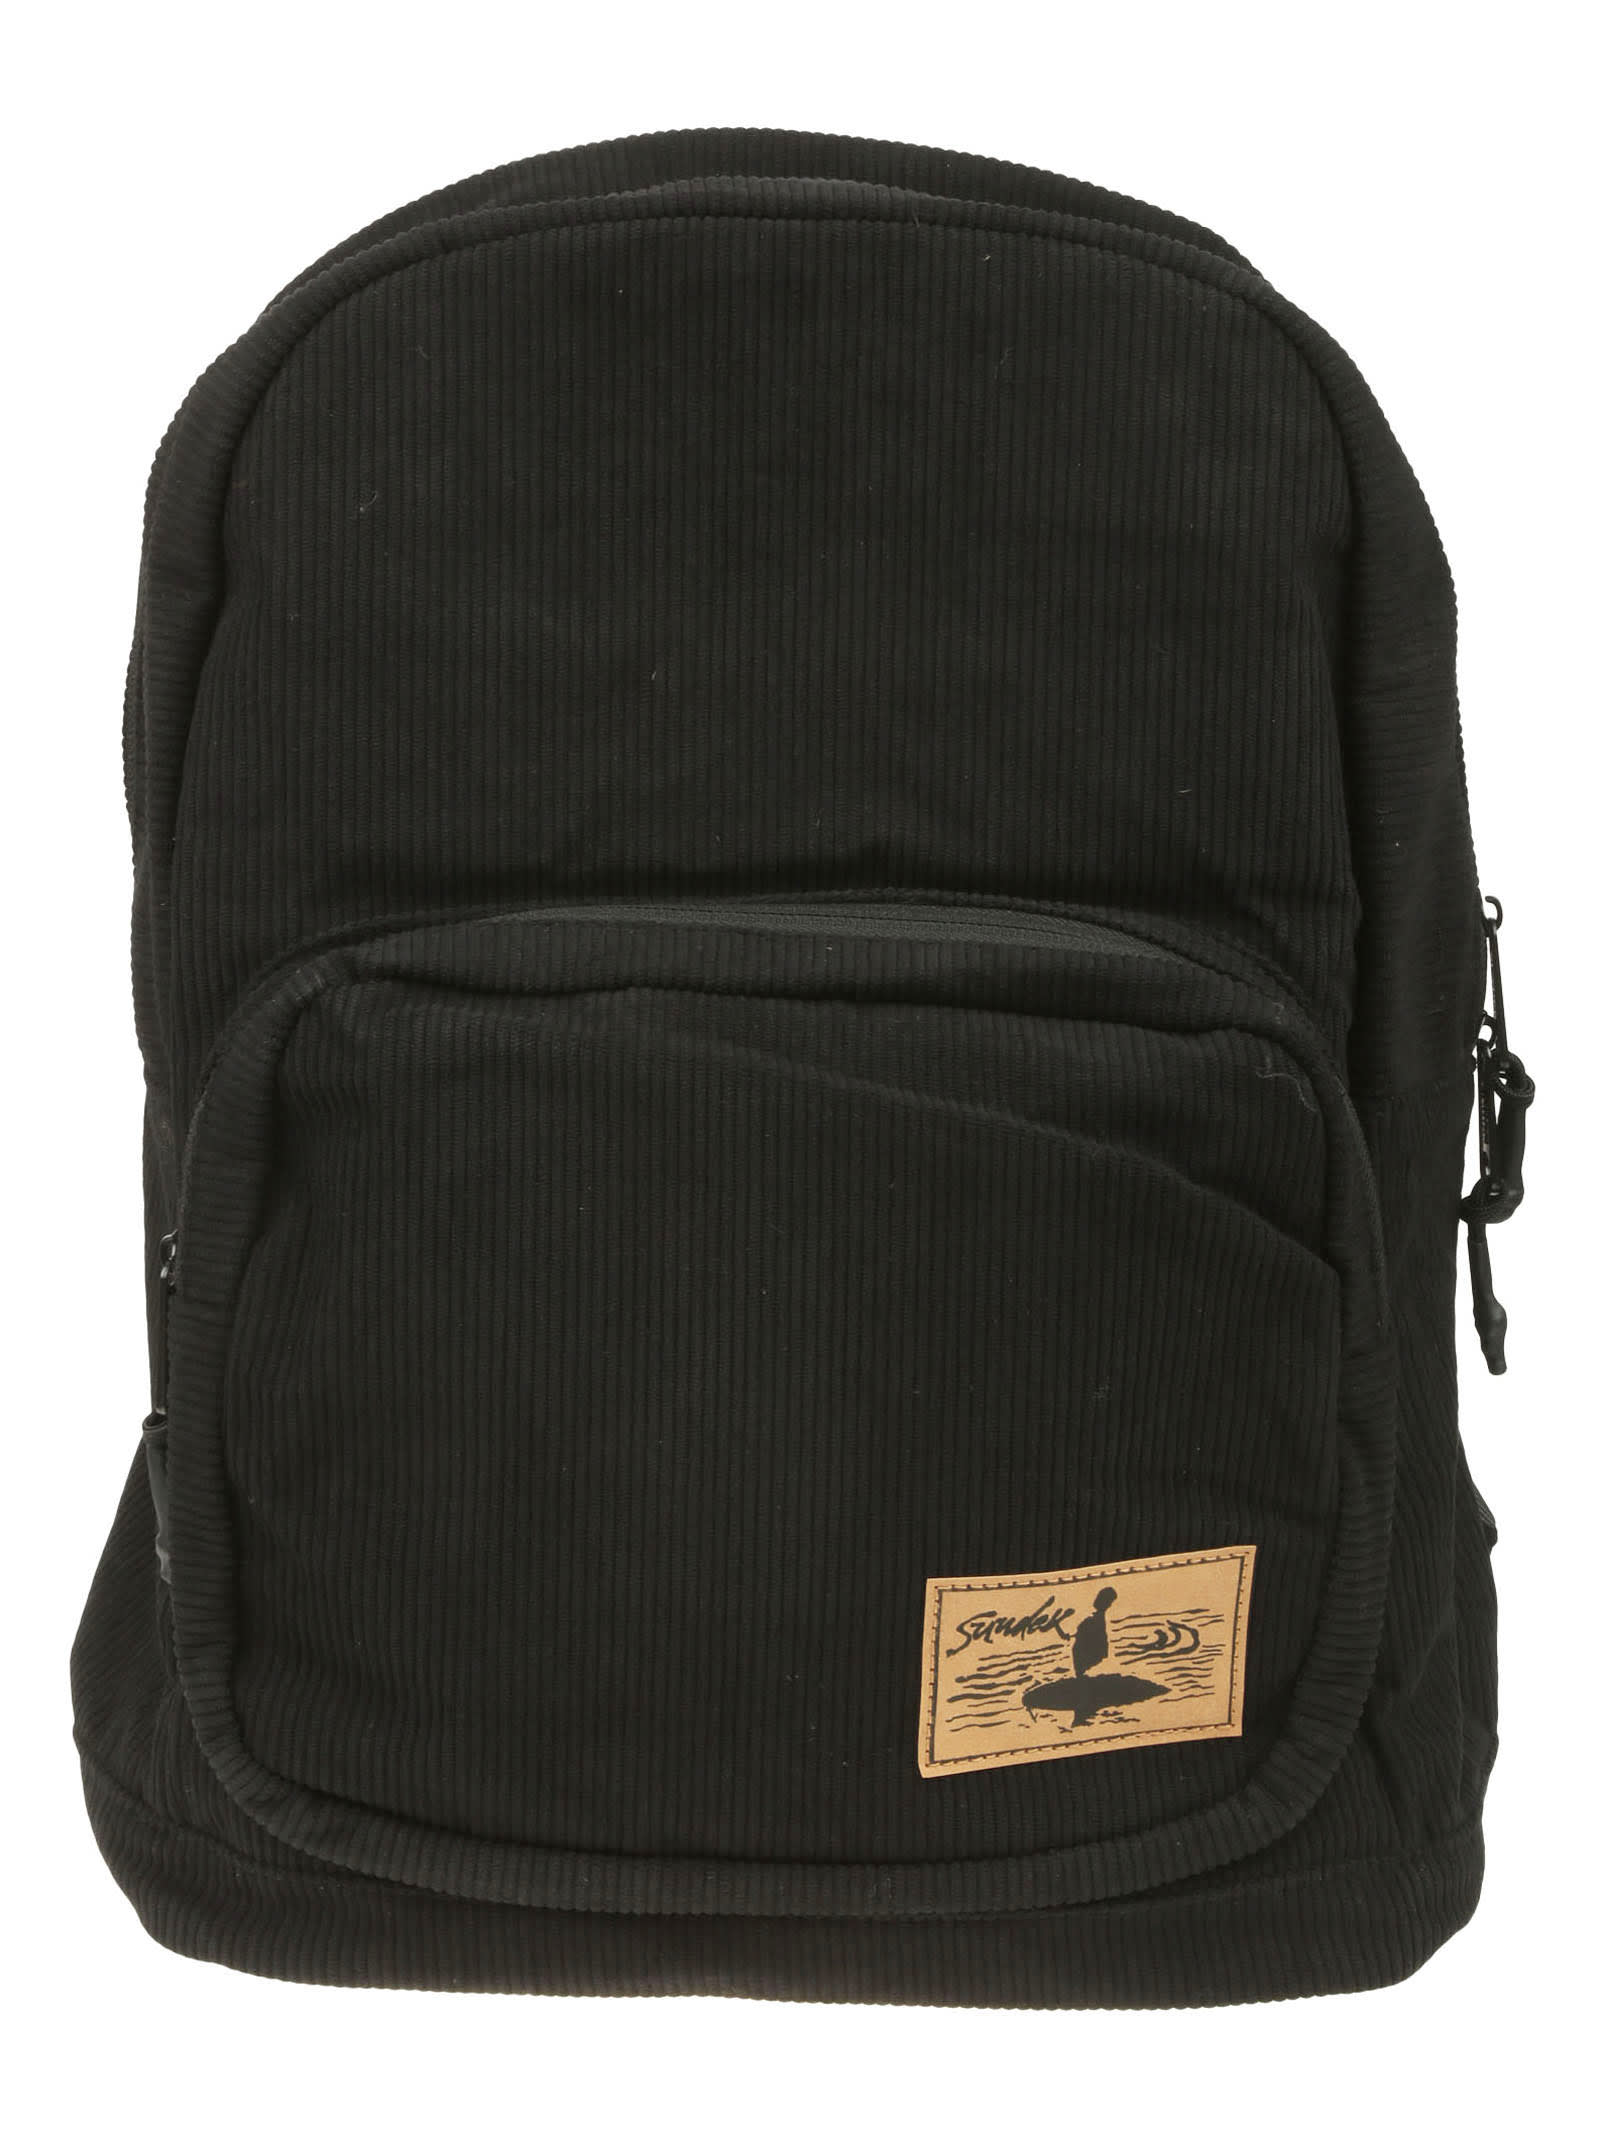 Sundek Backpack